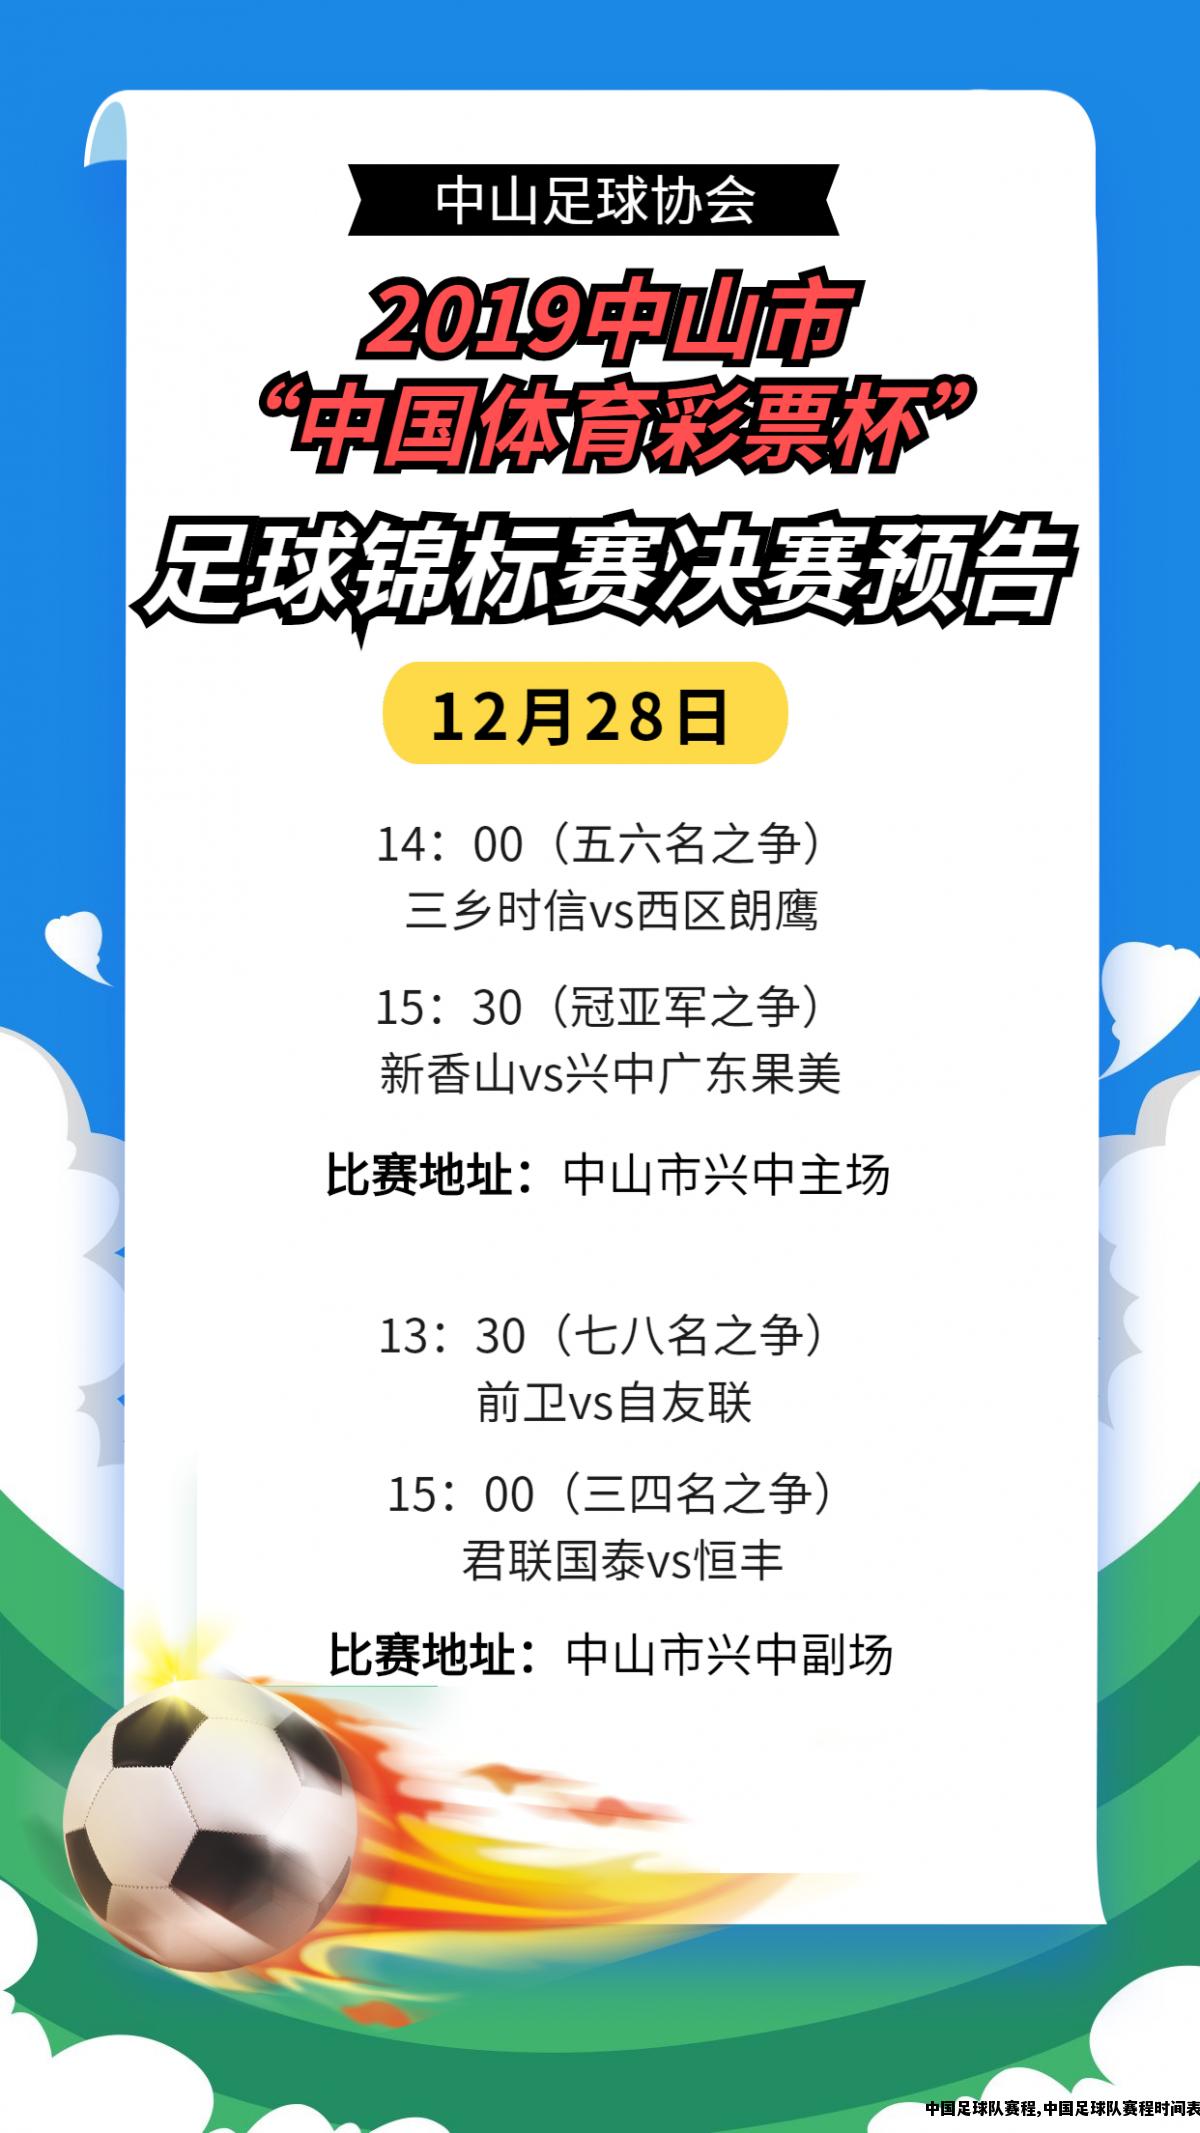 中国足球队赛程,中国足球队赛程时间表